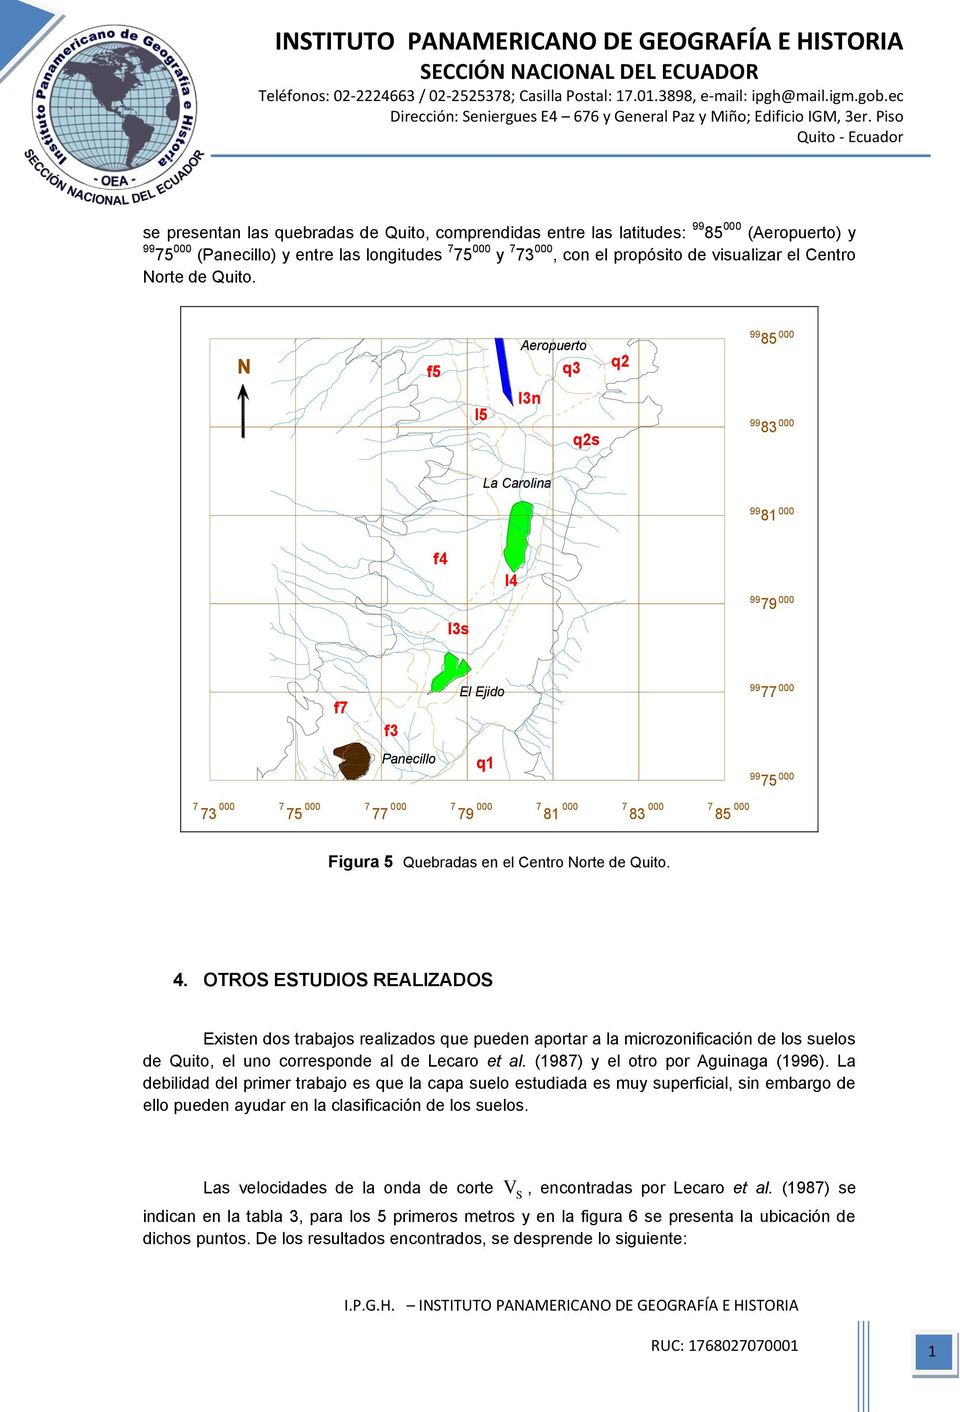 OTROS ESTUDIOS REALIZADOS Existen dos trabajos realizados que pueden aportar a la microzonificación de los suelos de Quito, el uno corresponde al de Lecaro et al. (1987) y el otro por Aguinaga (1996).